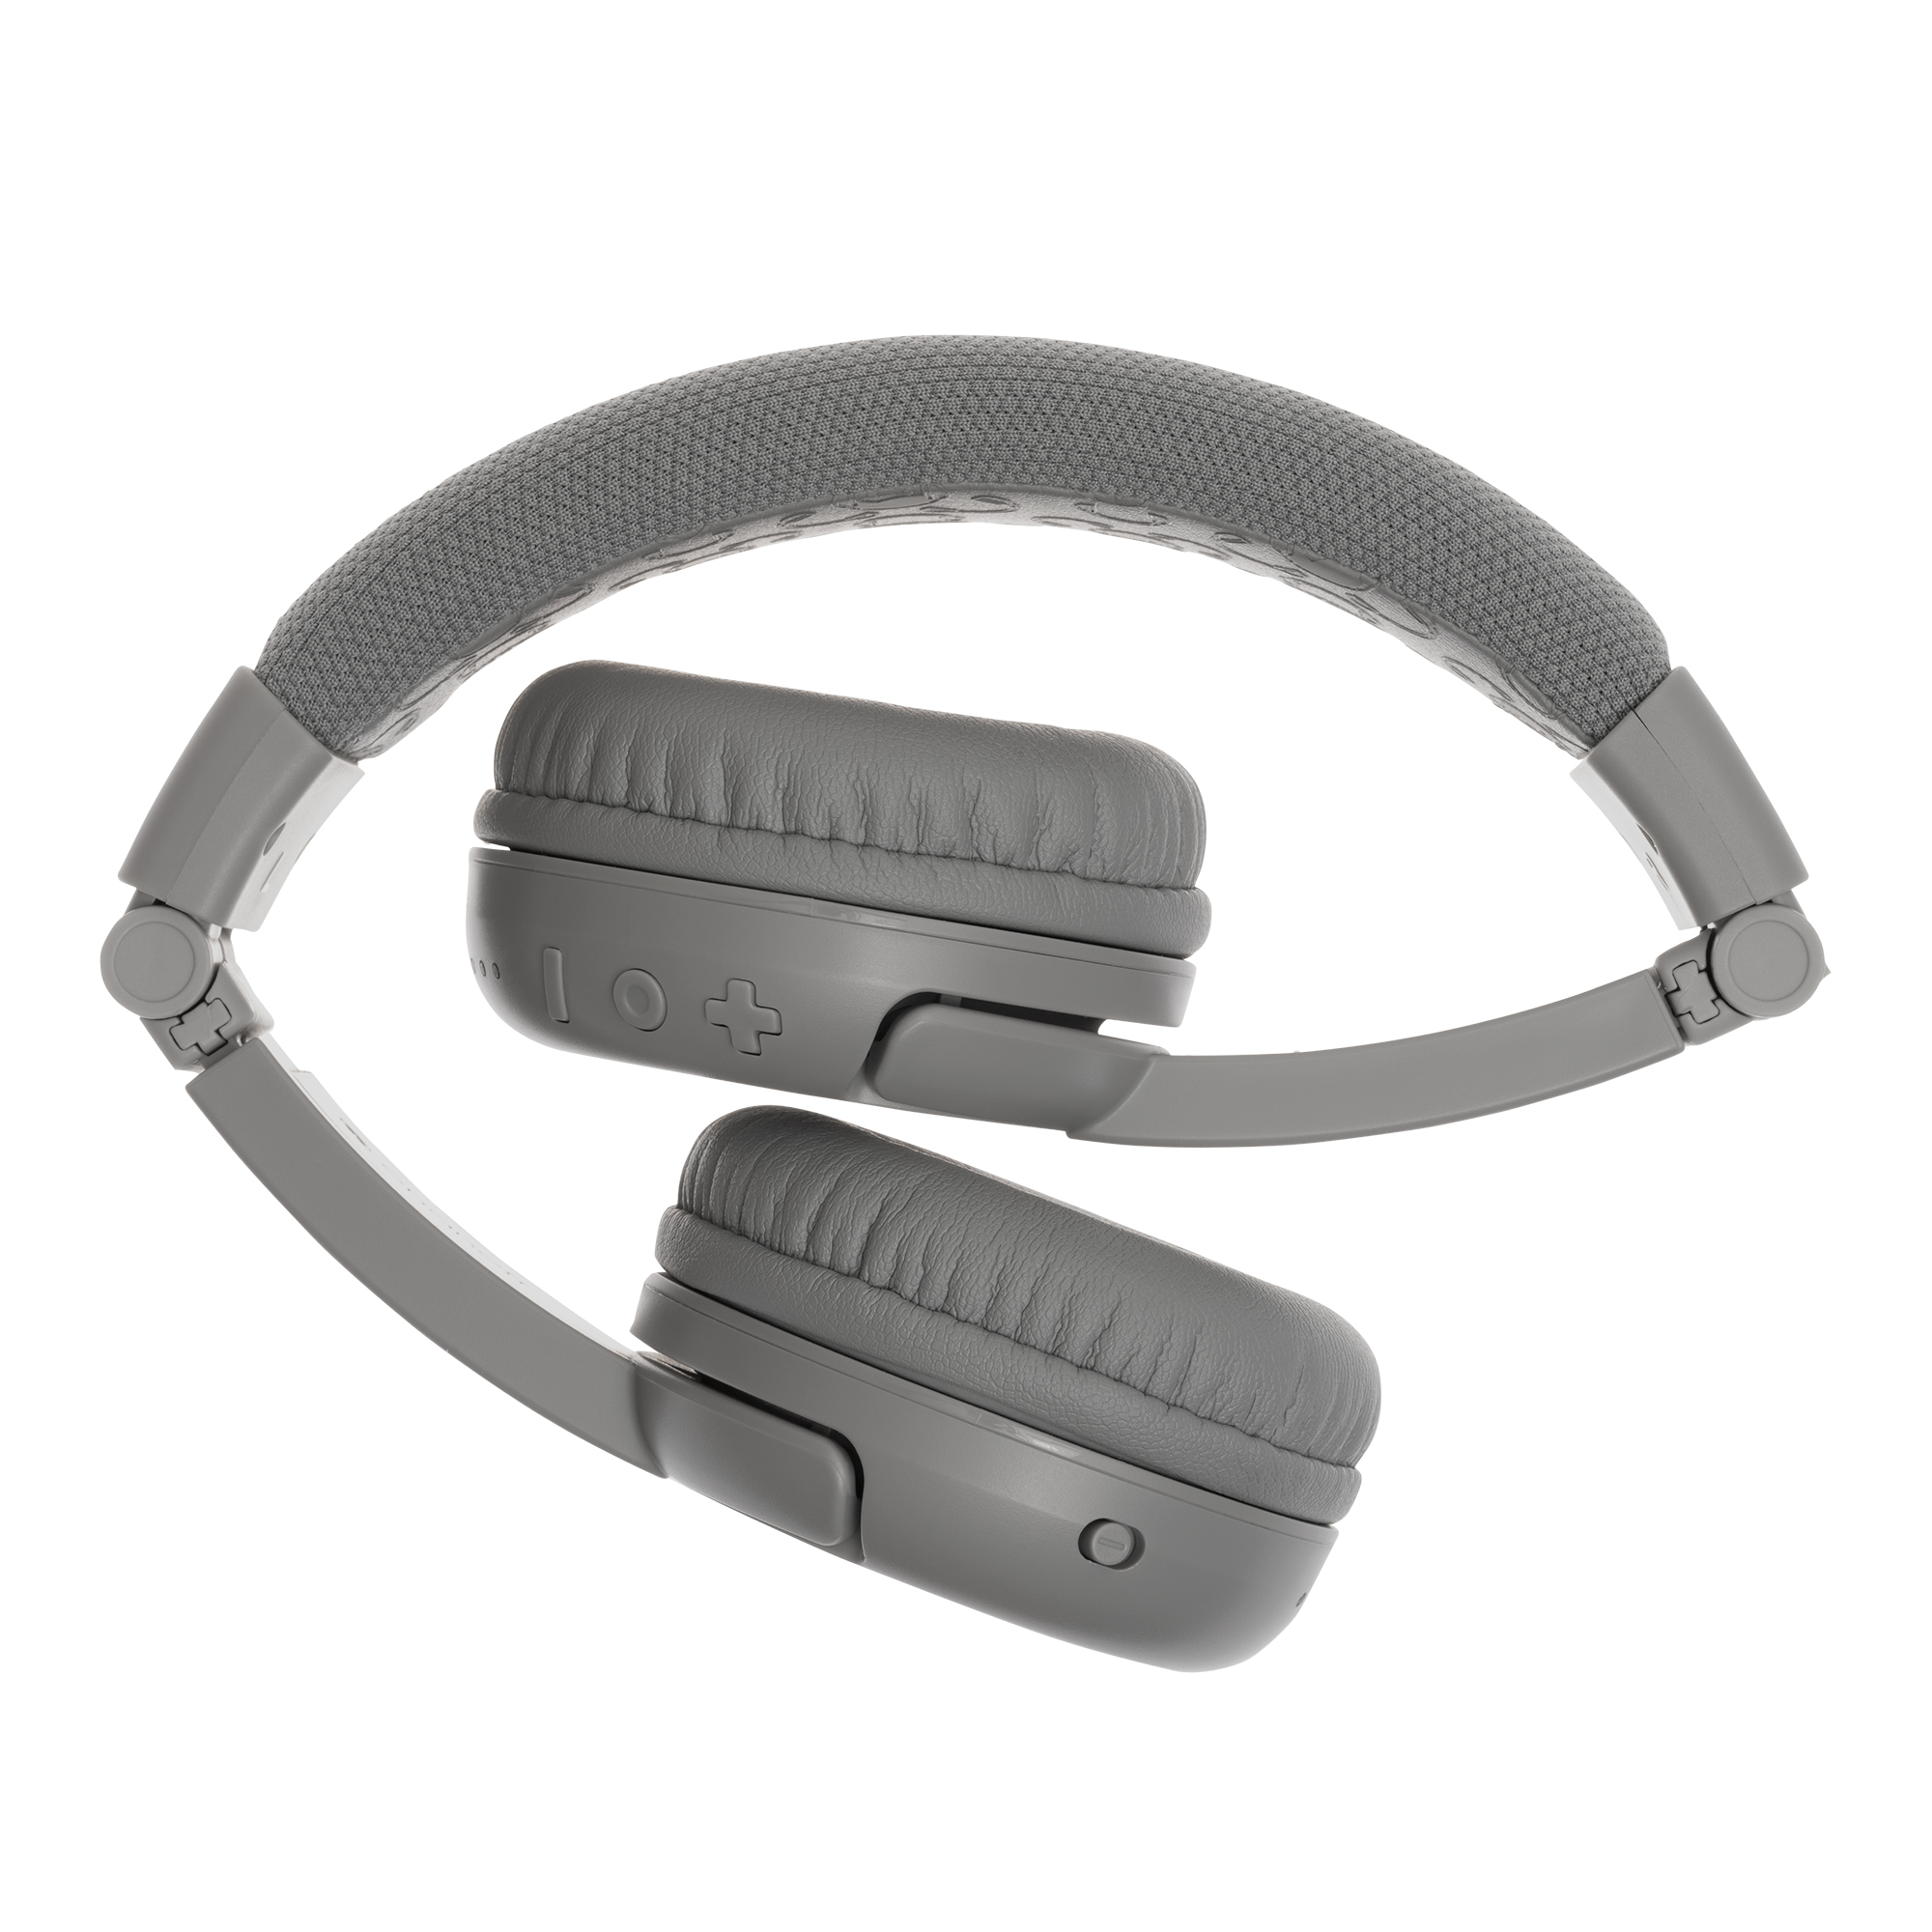 BUDDYPHONES Play Kinder Bluetooth Kopfhörer Grau Plus, On-ear